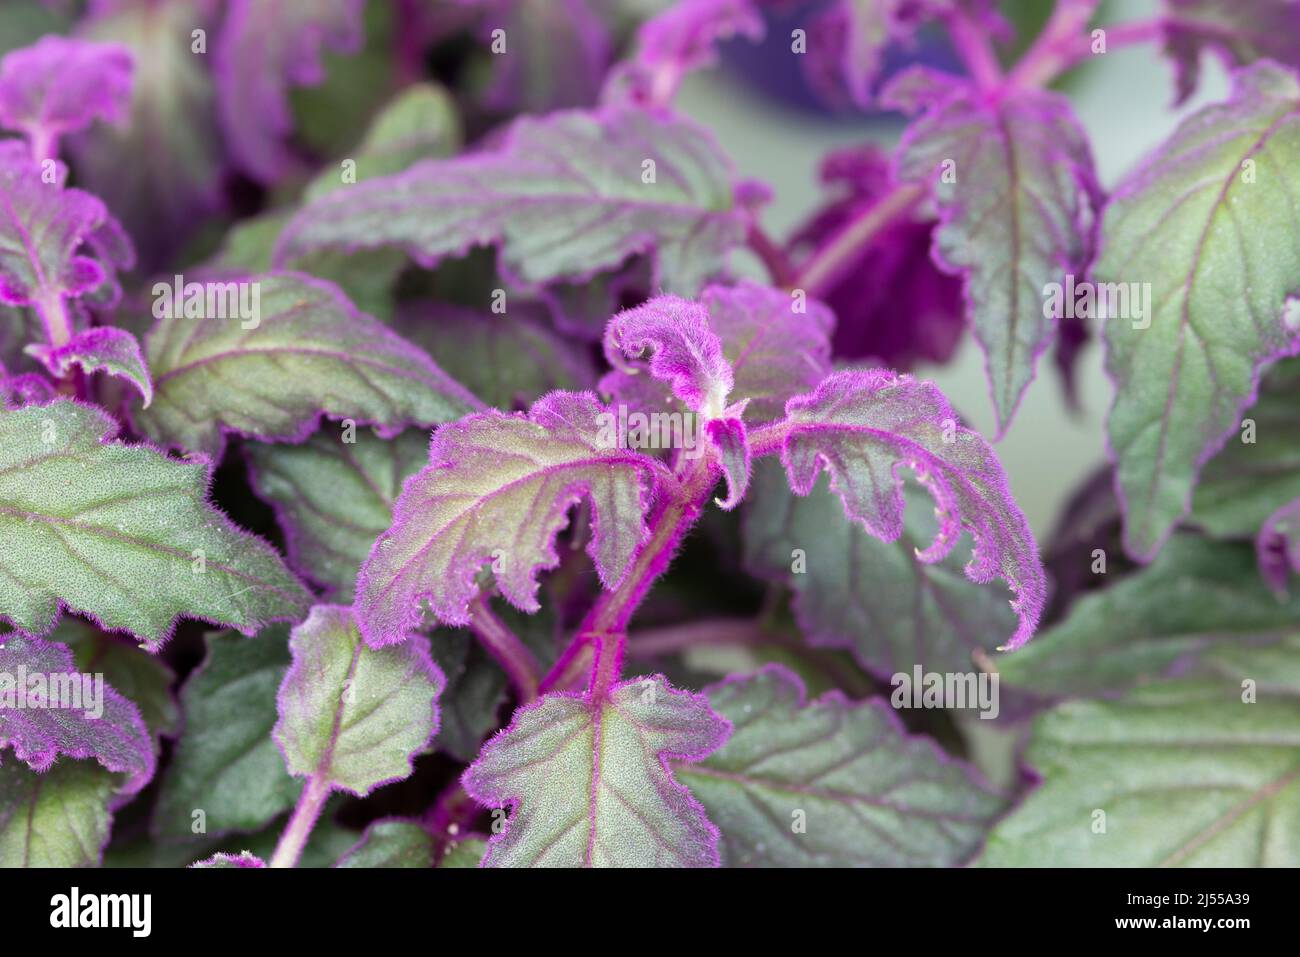 Purple Passion Vine Leaves, Gynura Aurantiaca Stock Photo